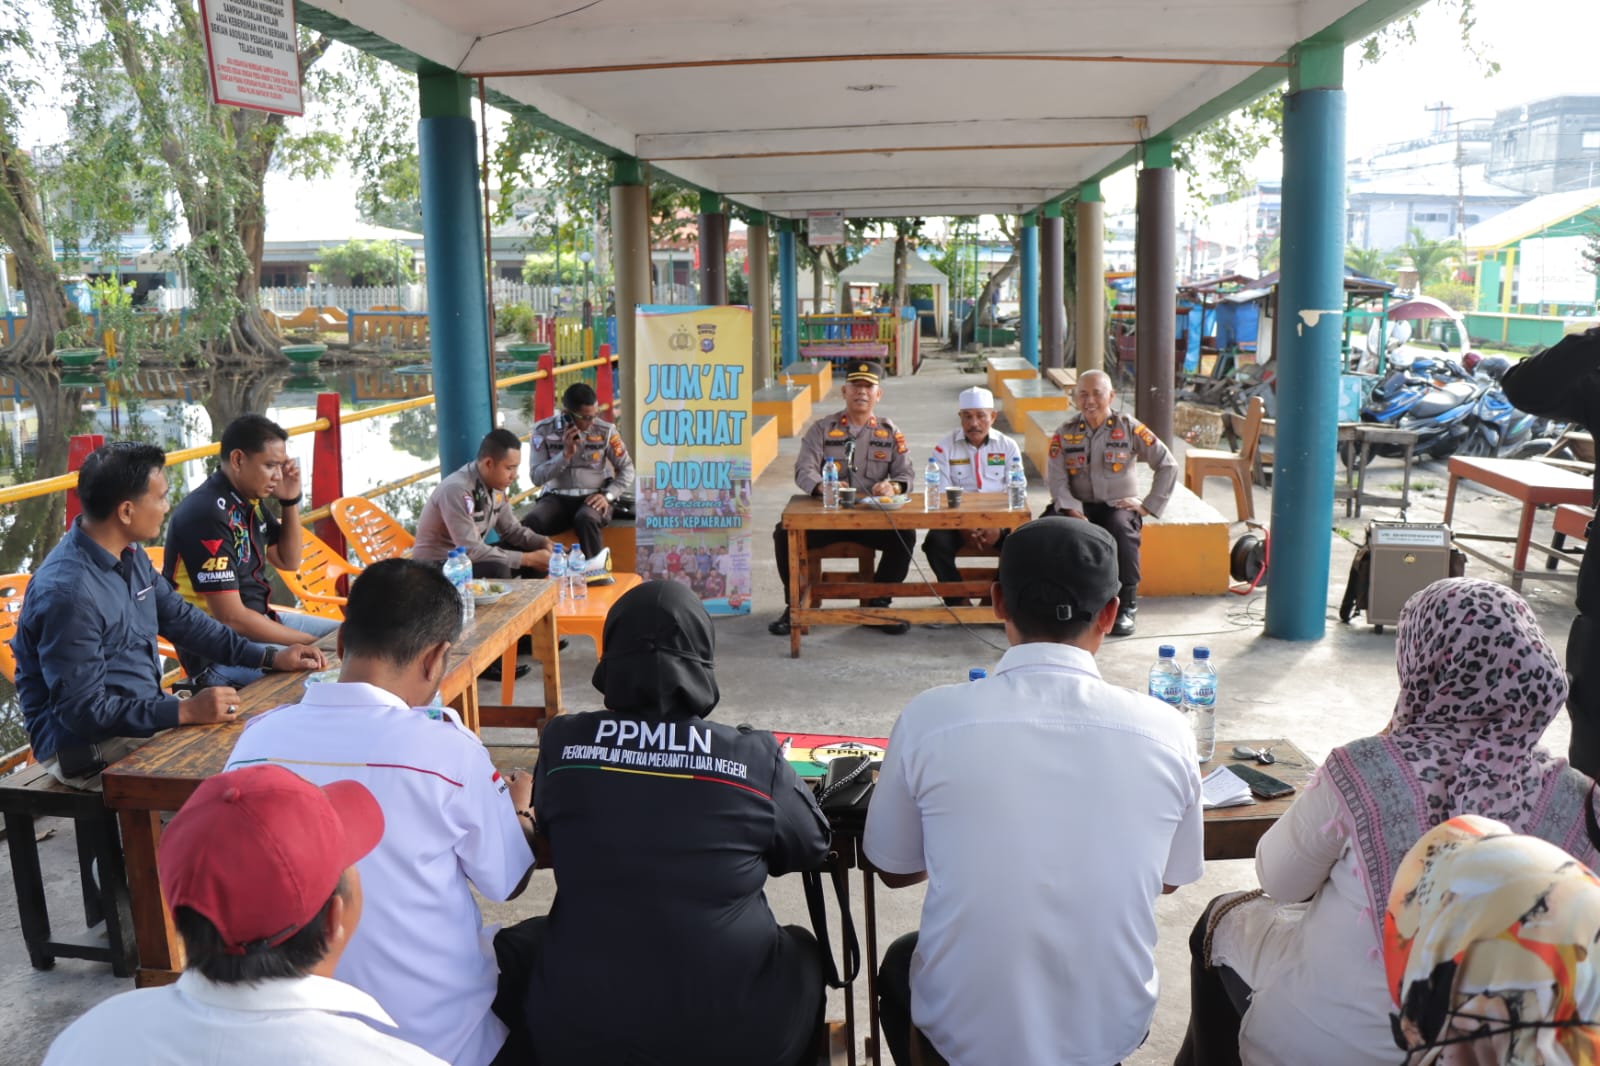 Program Jumat Curhat, Wakapolres Kepulauan Meranti Duduk Bersama PPMLN